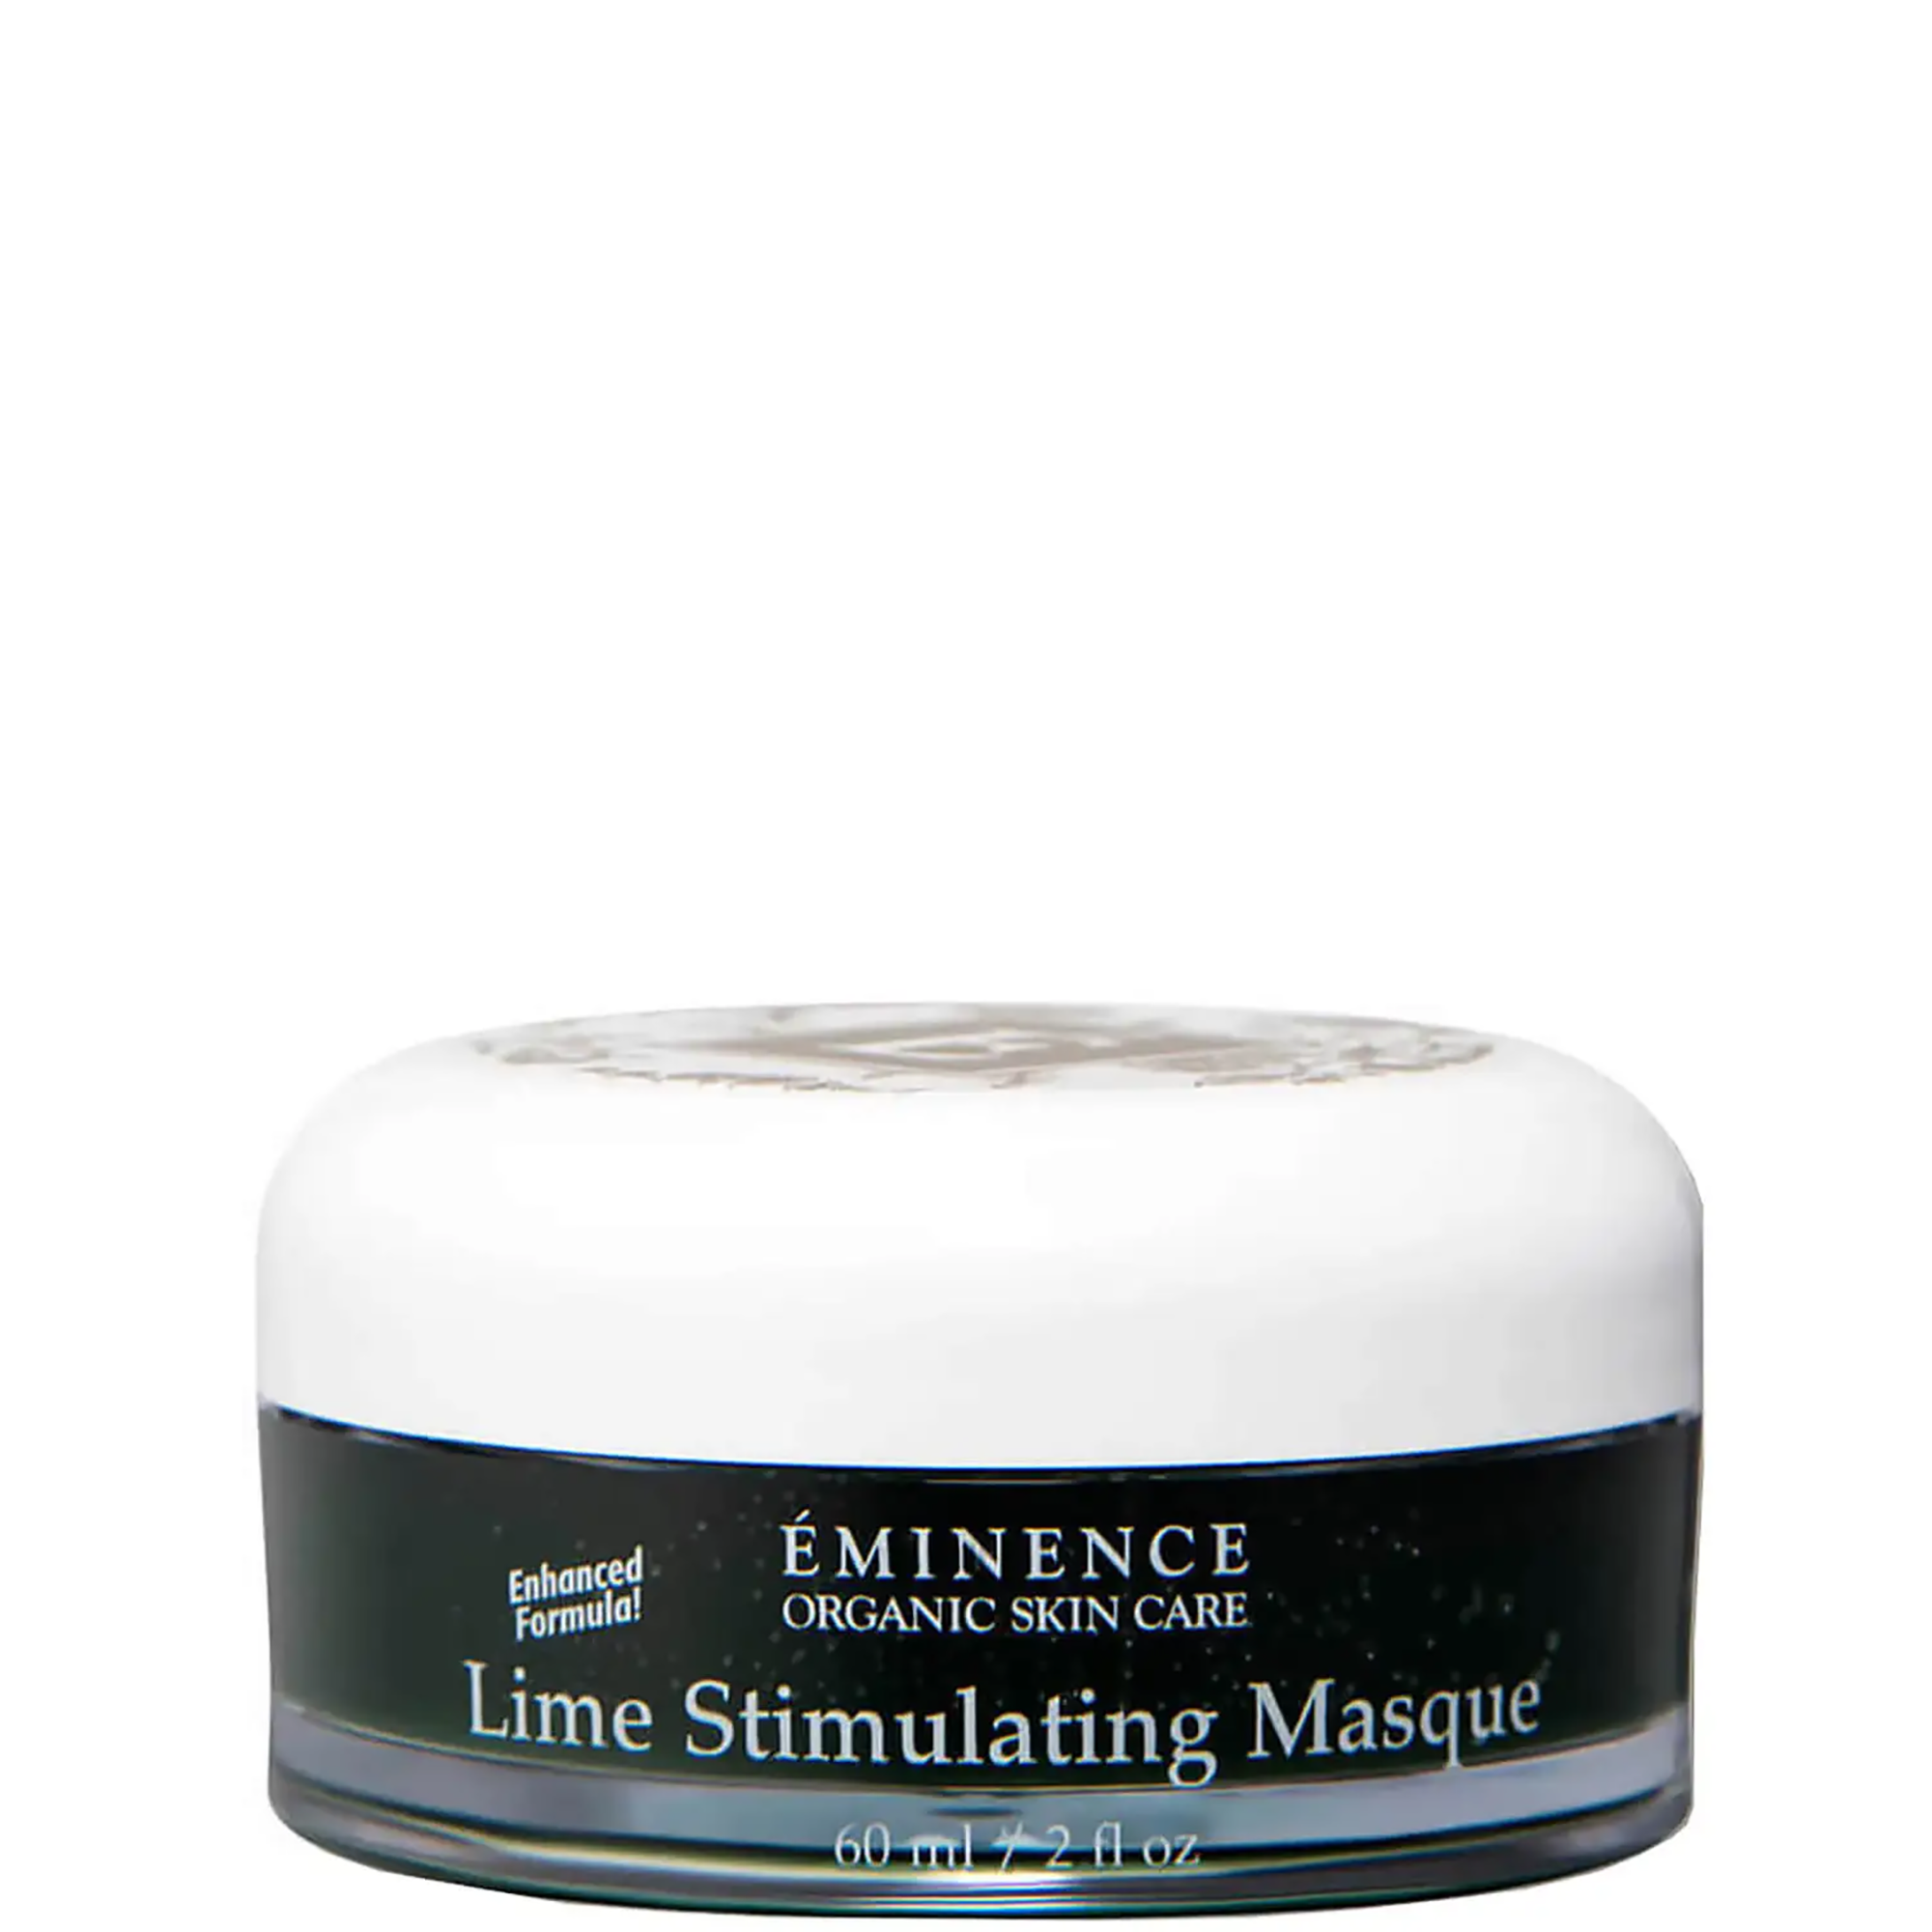 Eminence Organics Lime Stimulating Masque / 2OZ